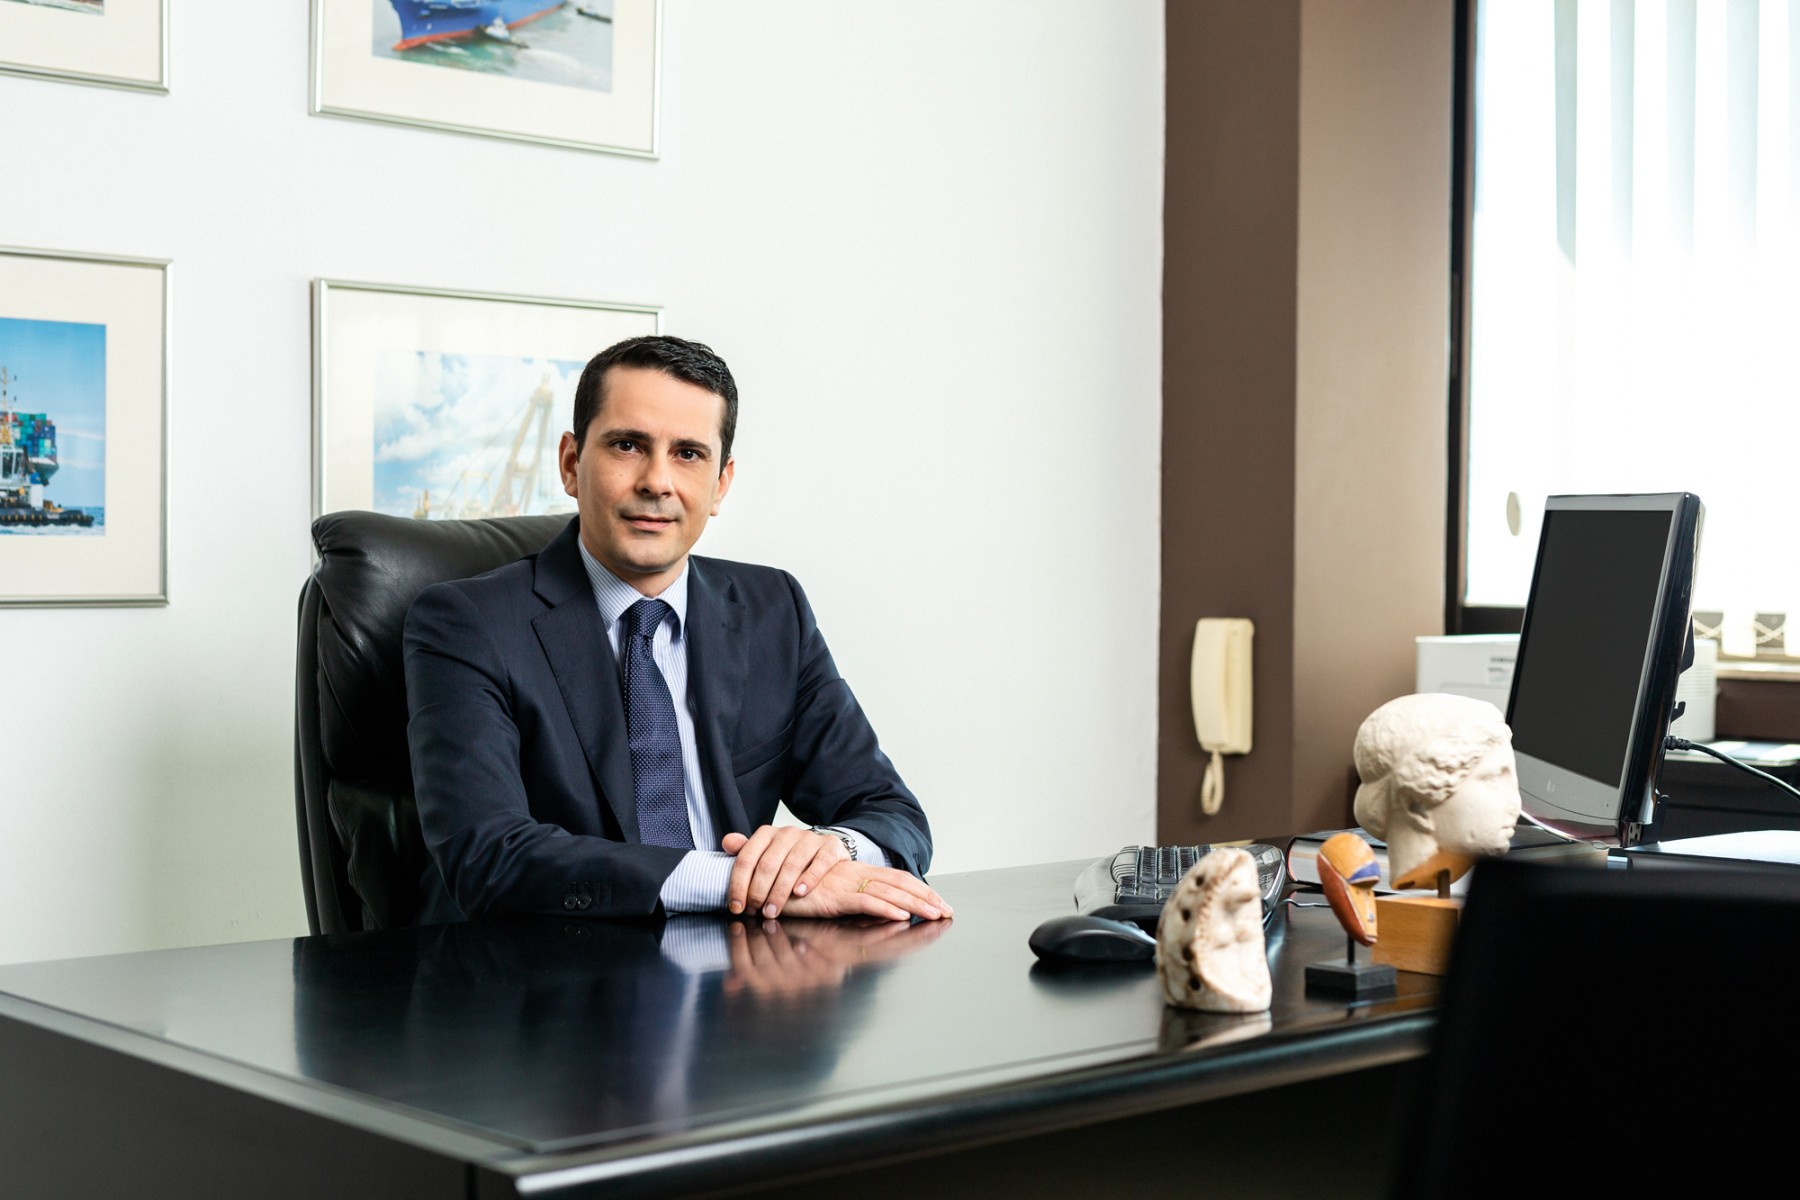 Φωτογράφιση δικηγορικού γραφείου και πορτρέτων στη Θεσσαλονίκη | Dikaion Law